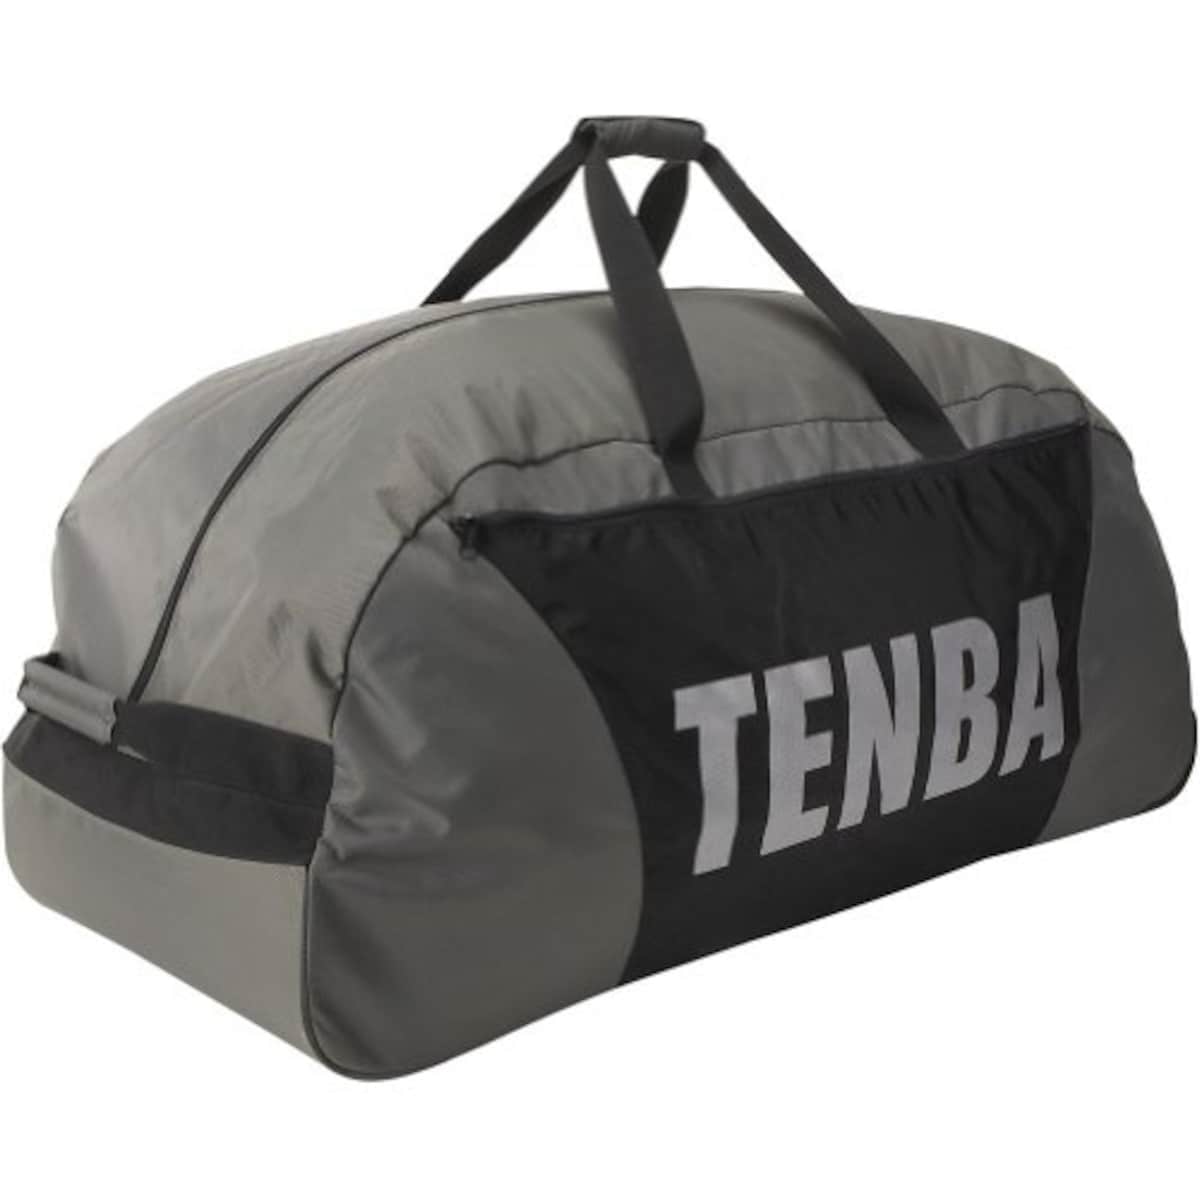  TENBA カートバッグ シュートアウト 多目的ダッフル ローラー付 シルバー/ブラック 632-902画像3 